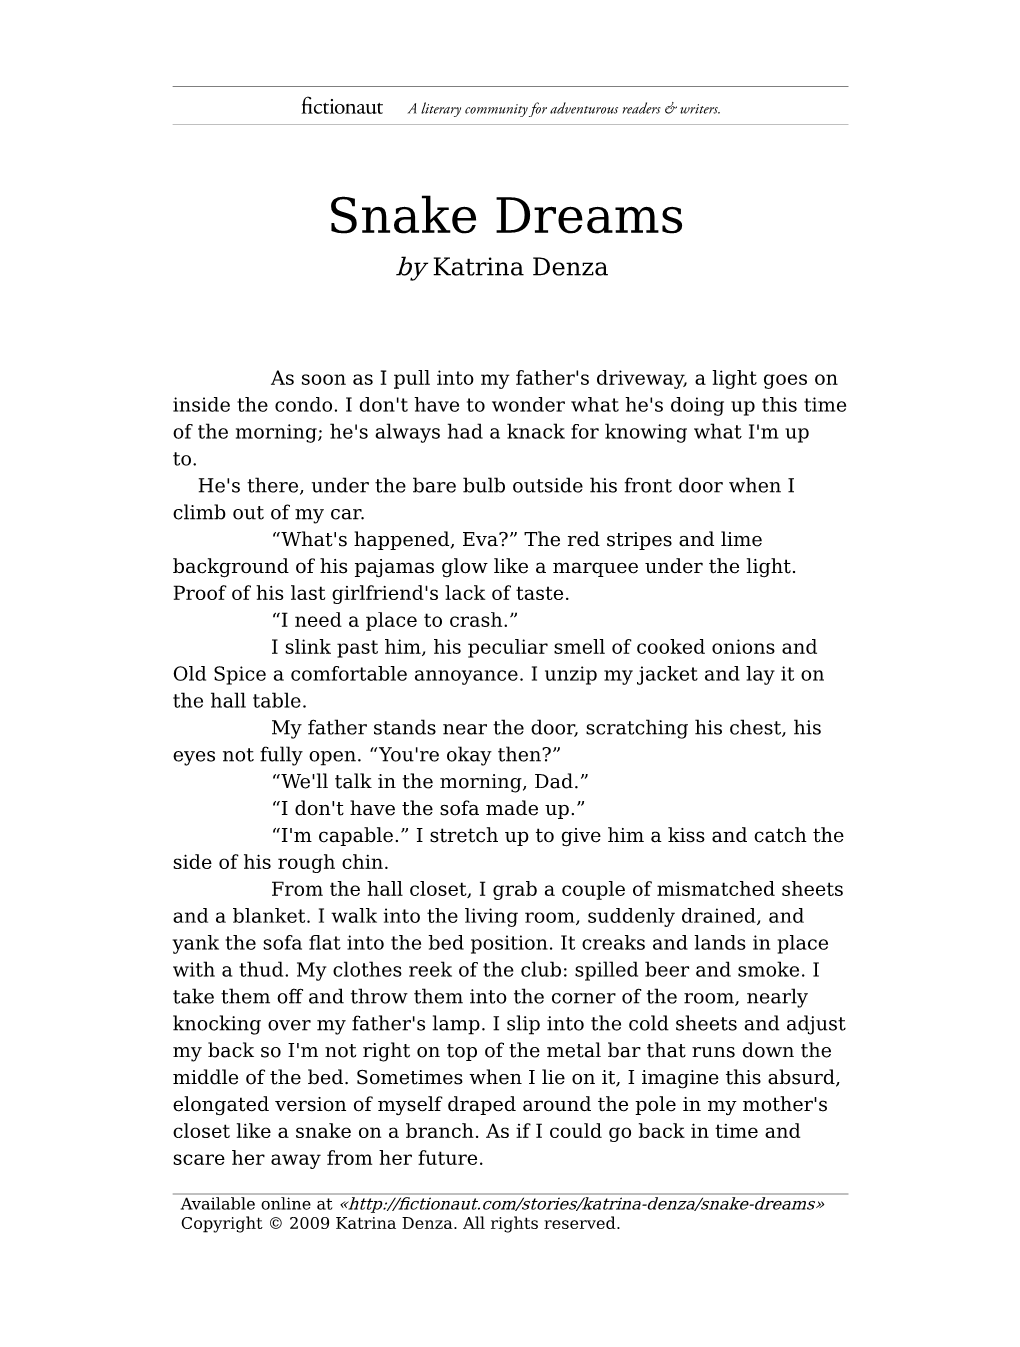 Snake Dreams by Katrina Denza